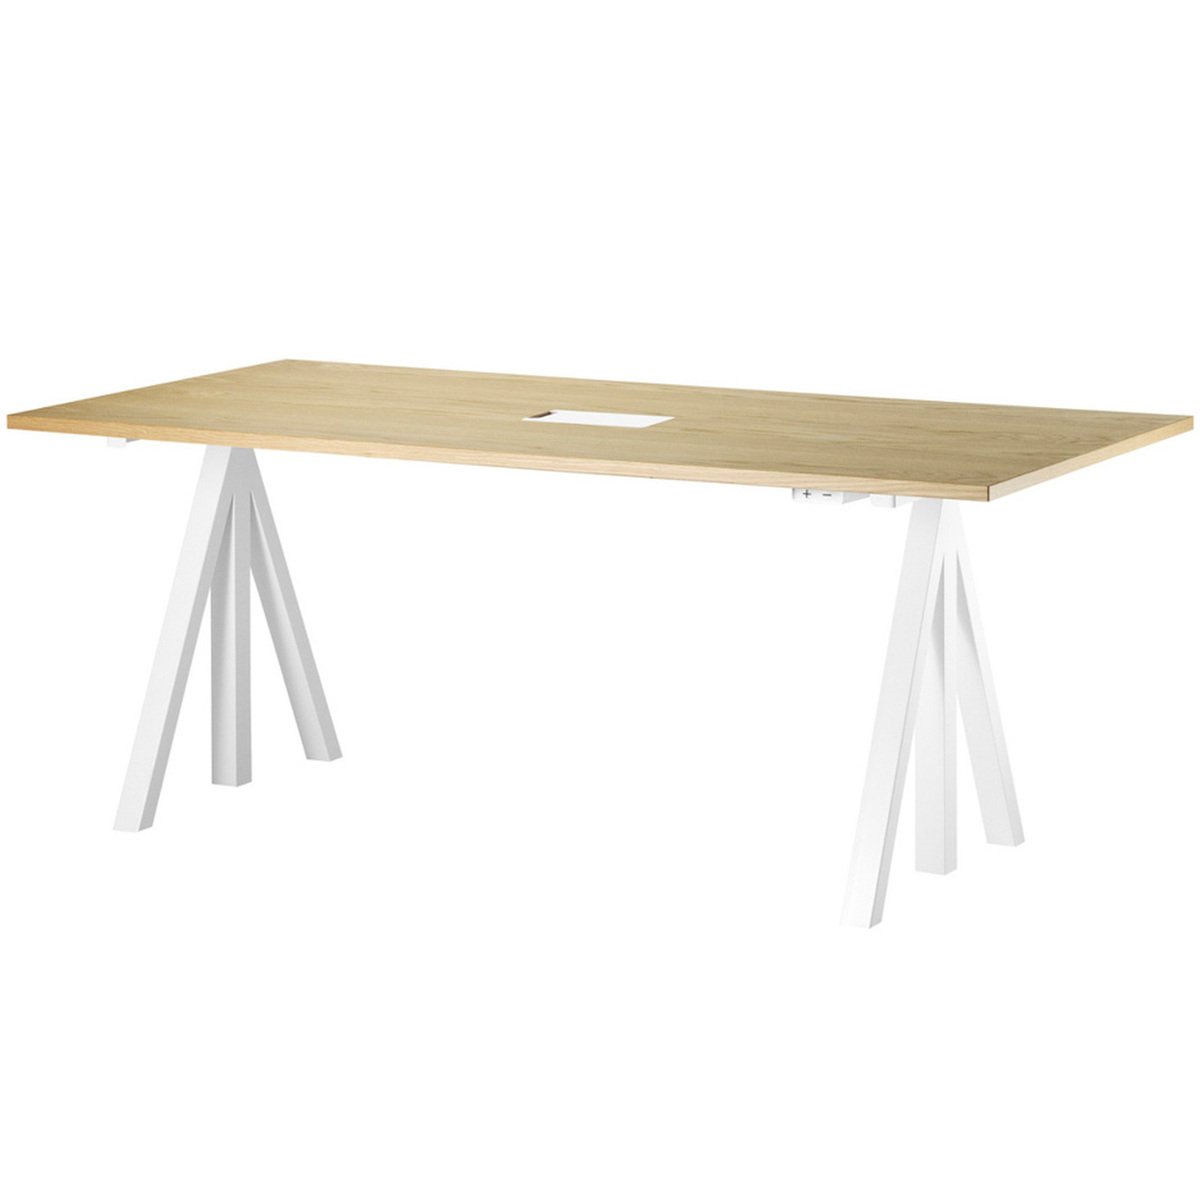 String Furniture Works Height Adjustable Work Desk 180 Cm Oak Finnish Design - Best Adjustable Height Work Table